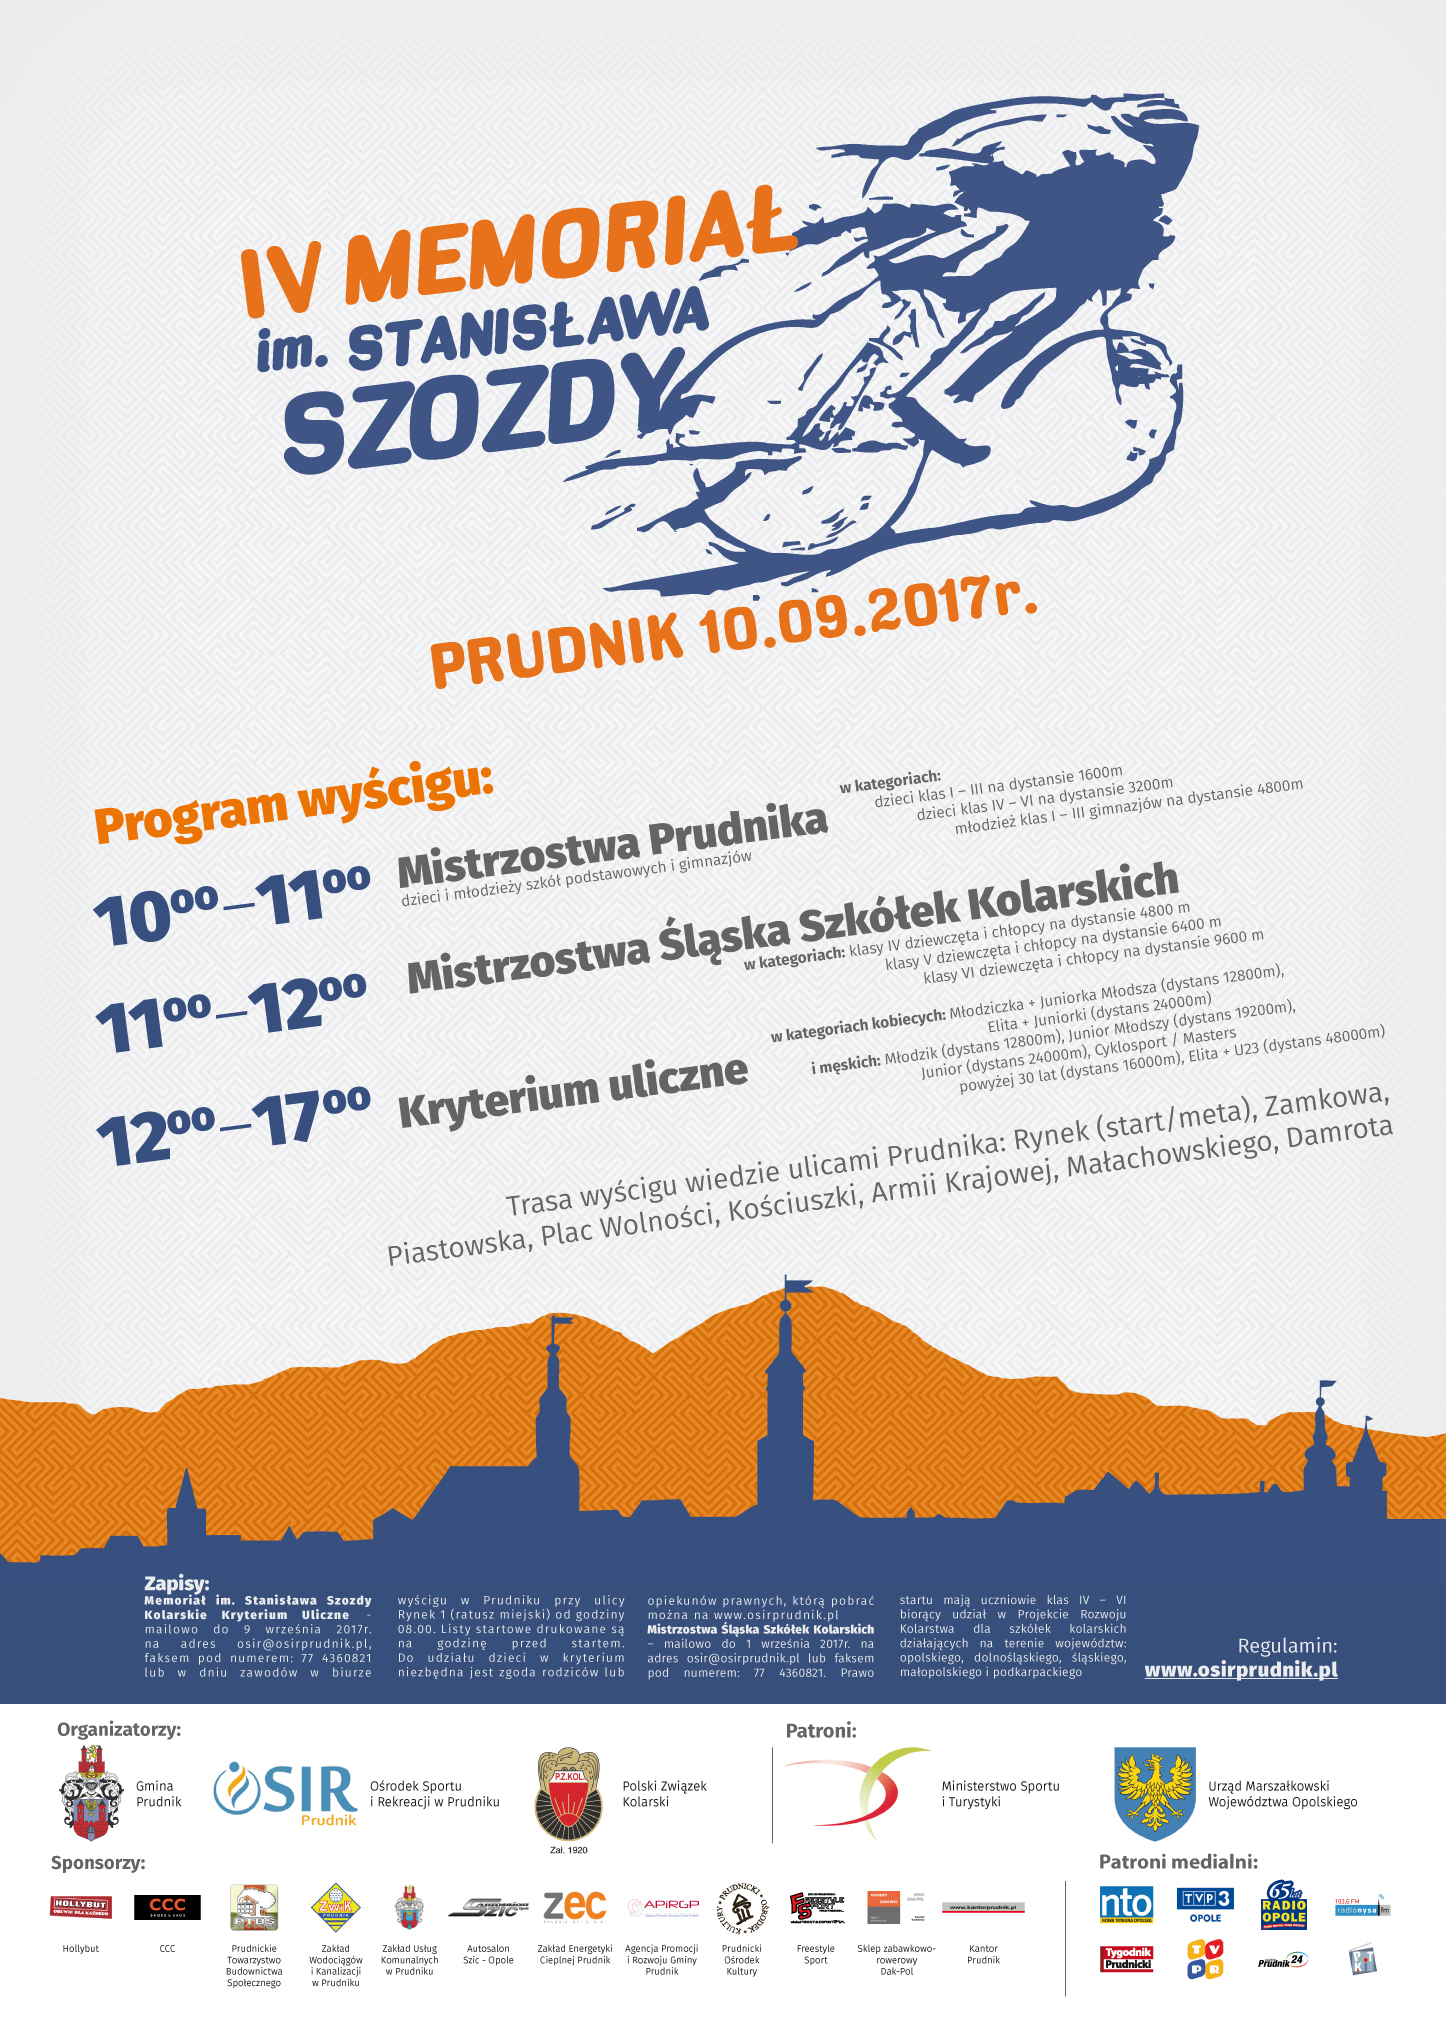 IV Memoriał im. Stanisława Szozdy już w niedzielę (10.09) w Prudniku